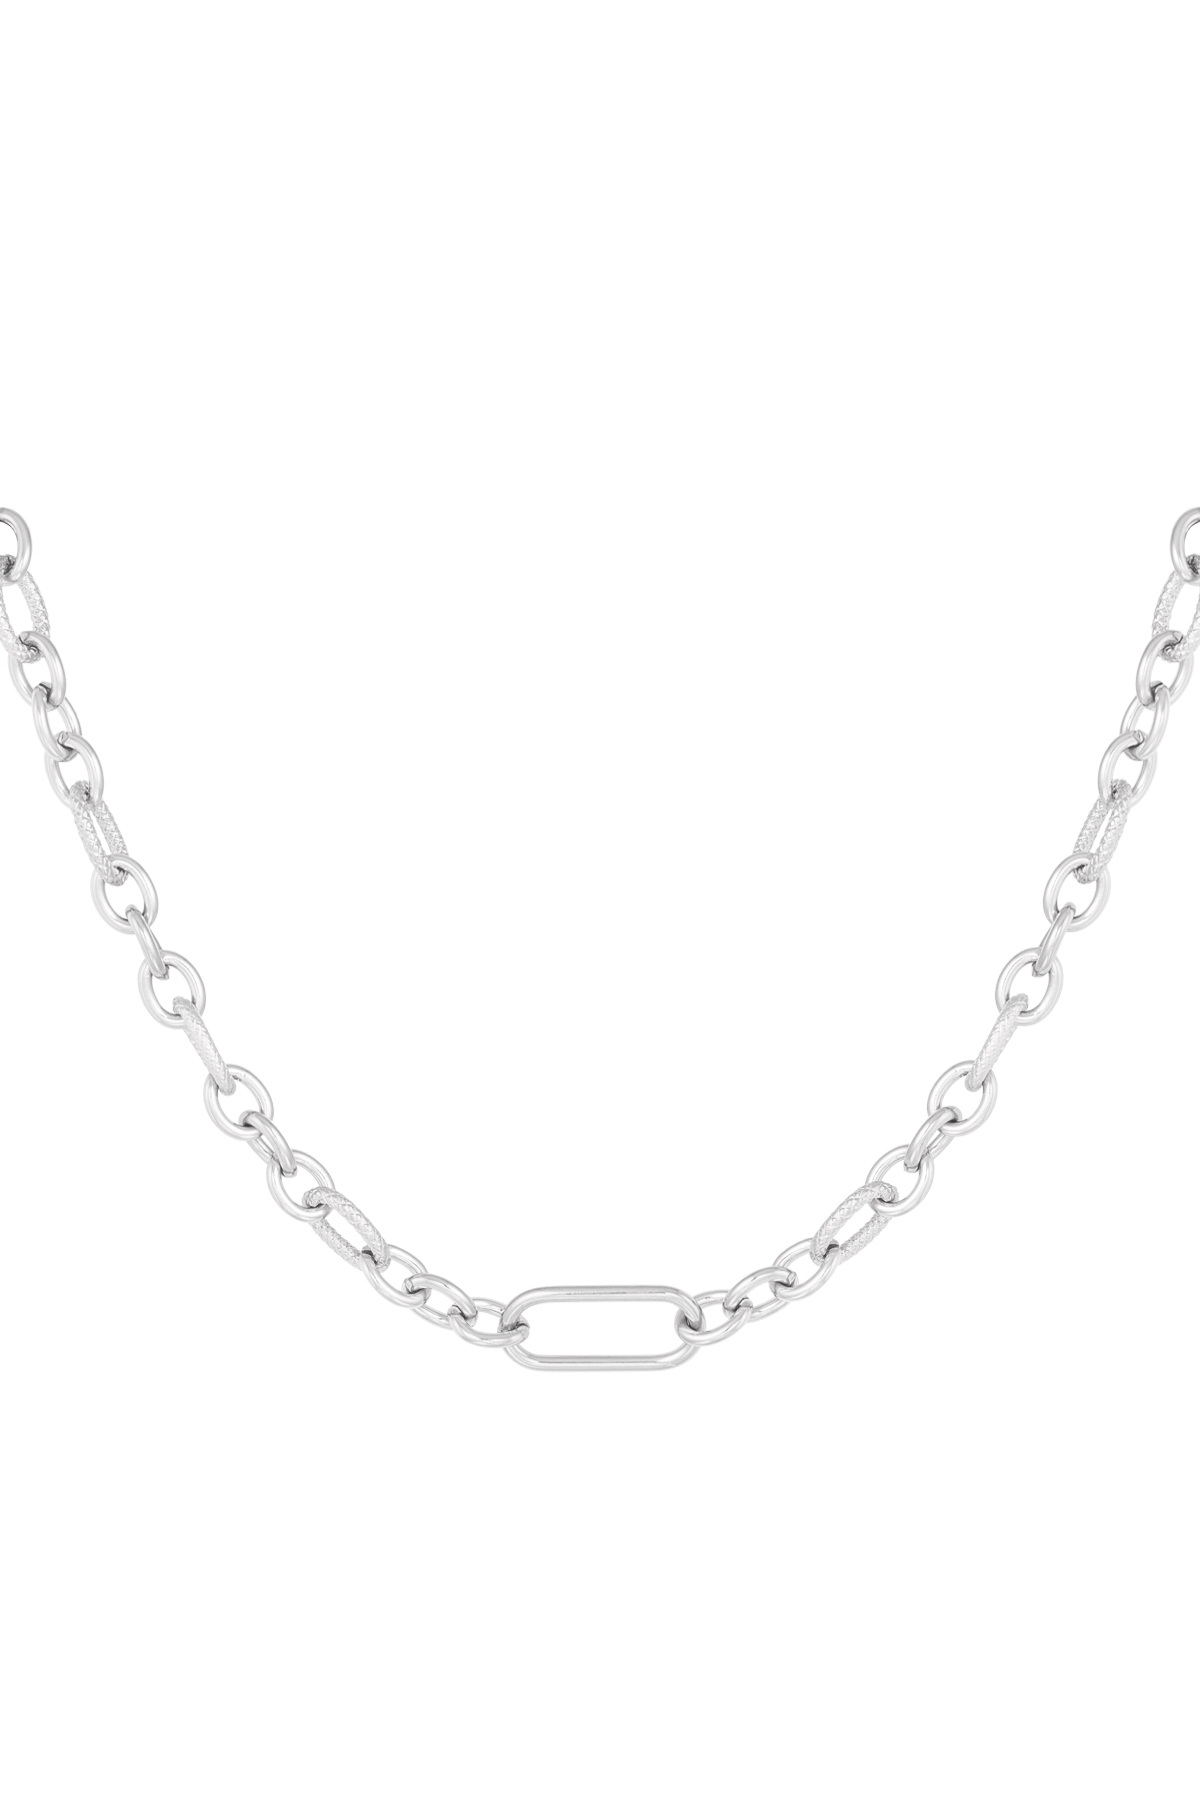 Halskette verschiedene Glieder - Silber h5 